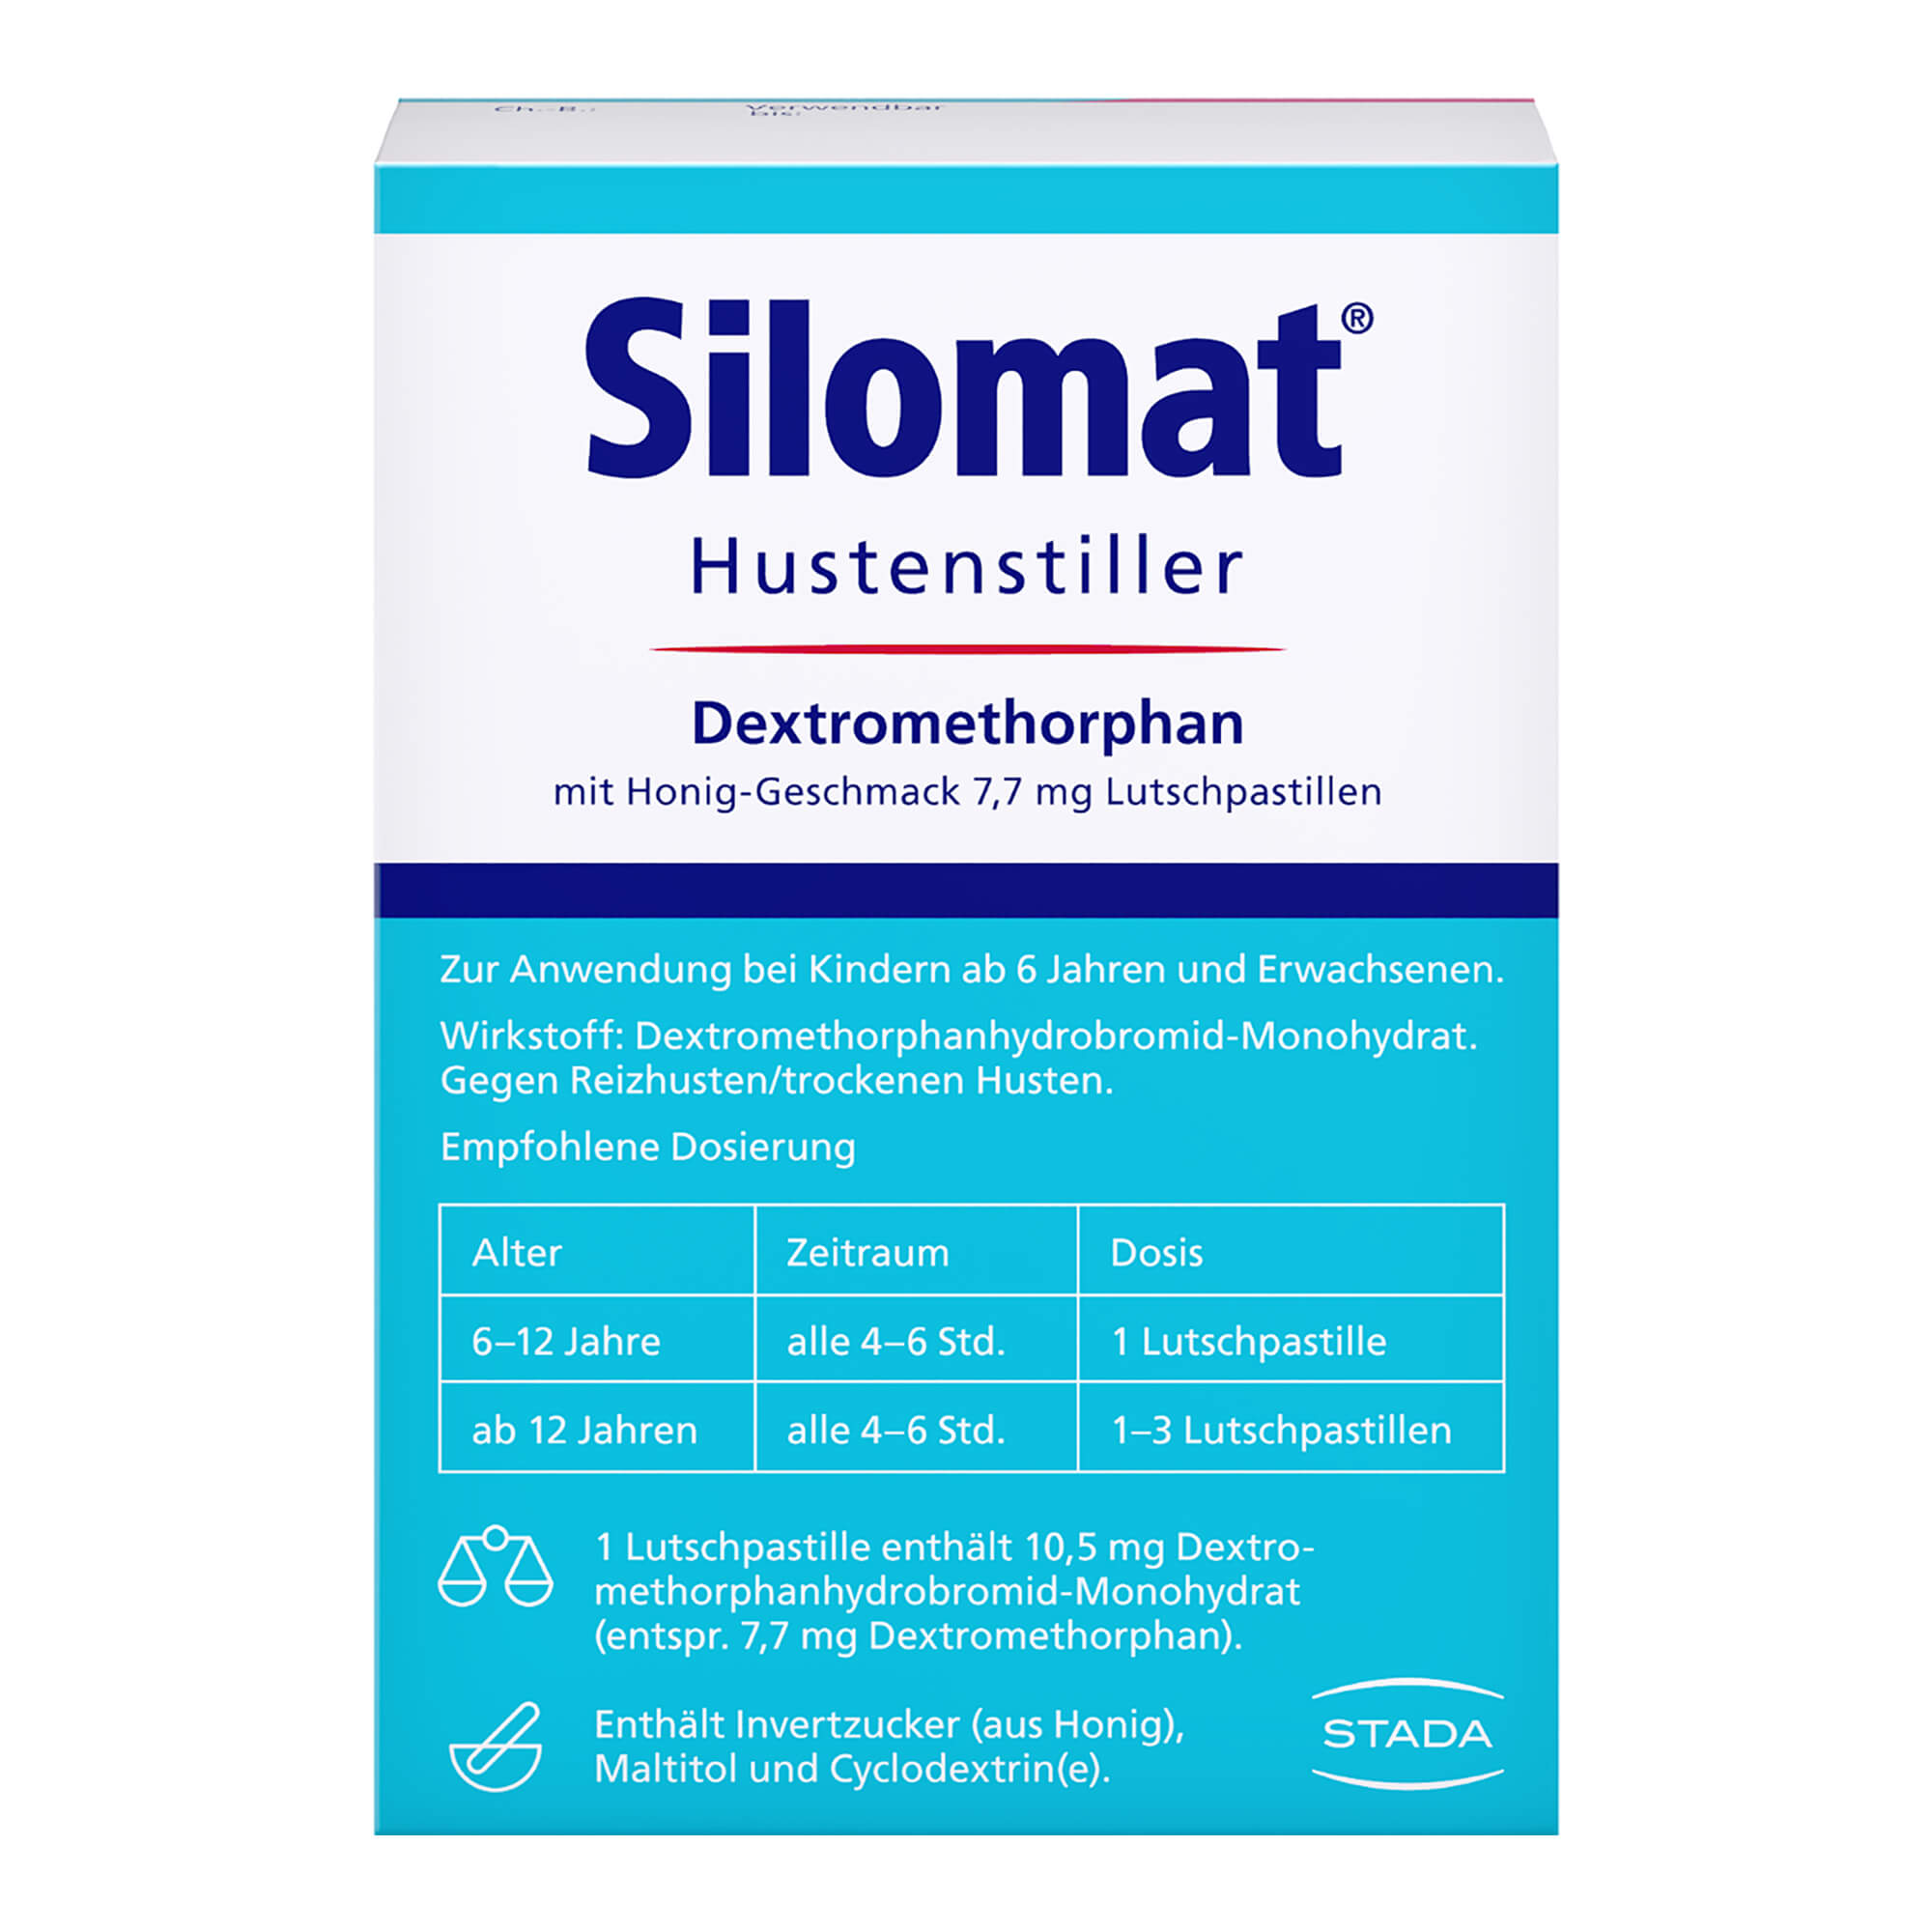 Silomat Hustenstiller Dextromethorphan mit Honig-Geschmack 7,7 mg Lutschpastillen Packungsrückseite